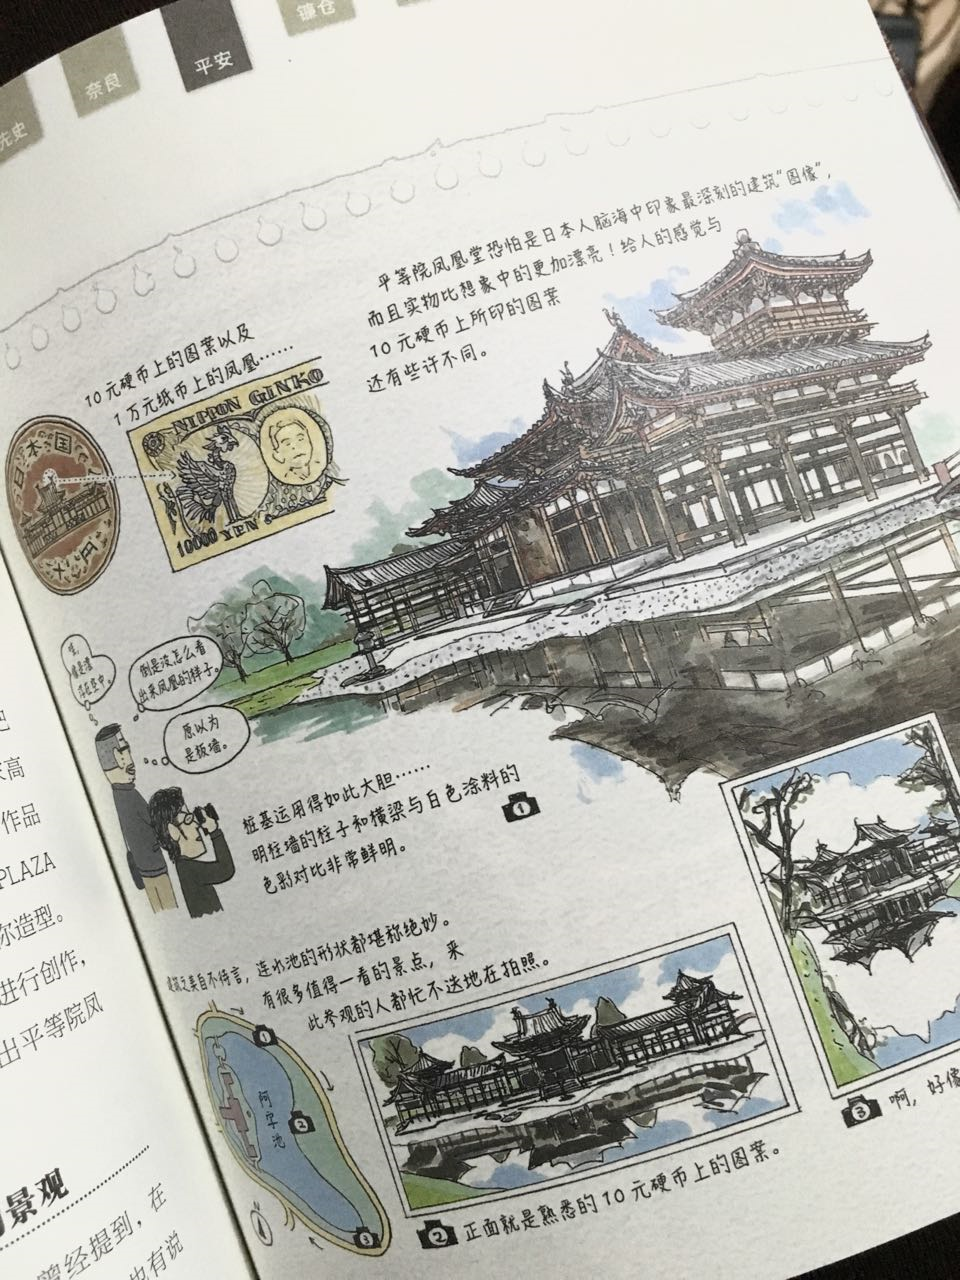 推荐一些可以了解日本的历史社会文化建筑的书